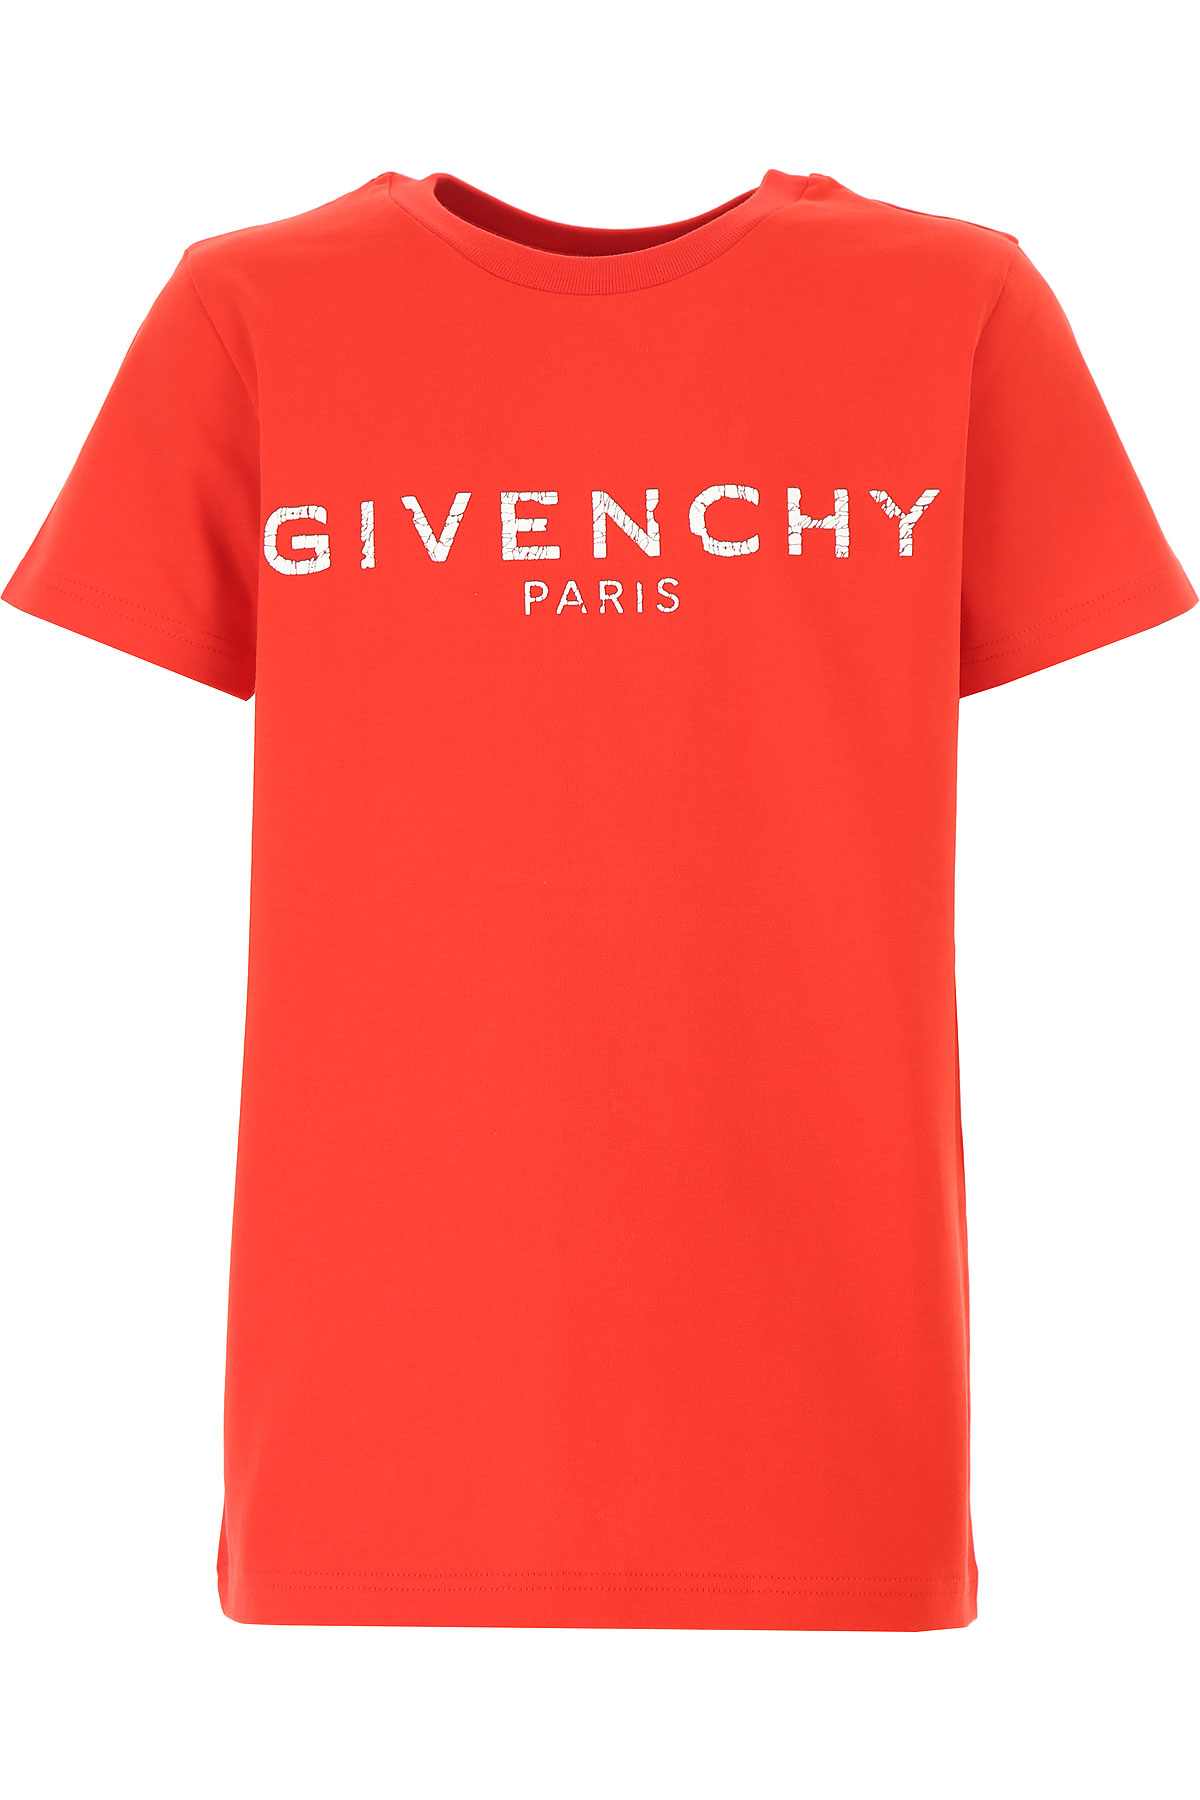 Givenchy Kinder T-Shirt für Jungen, Rot, Baumwolle, 2017, 10Y 12Y 4Y 6Y 8Y